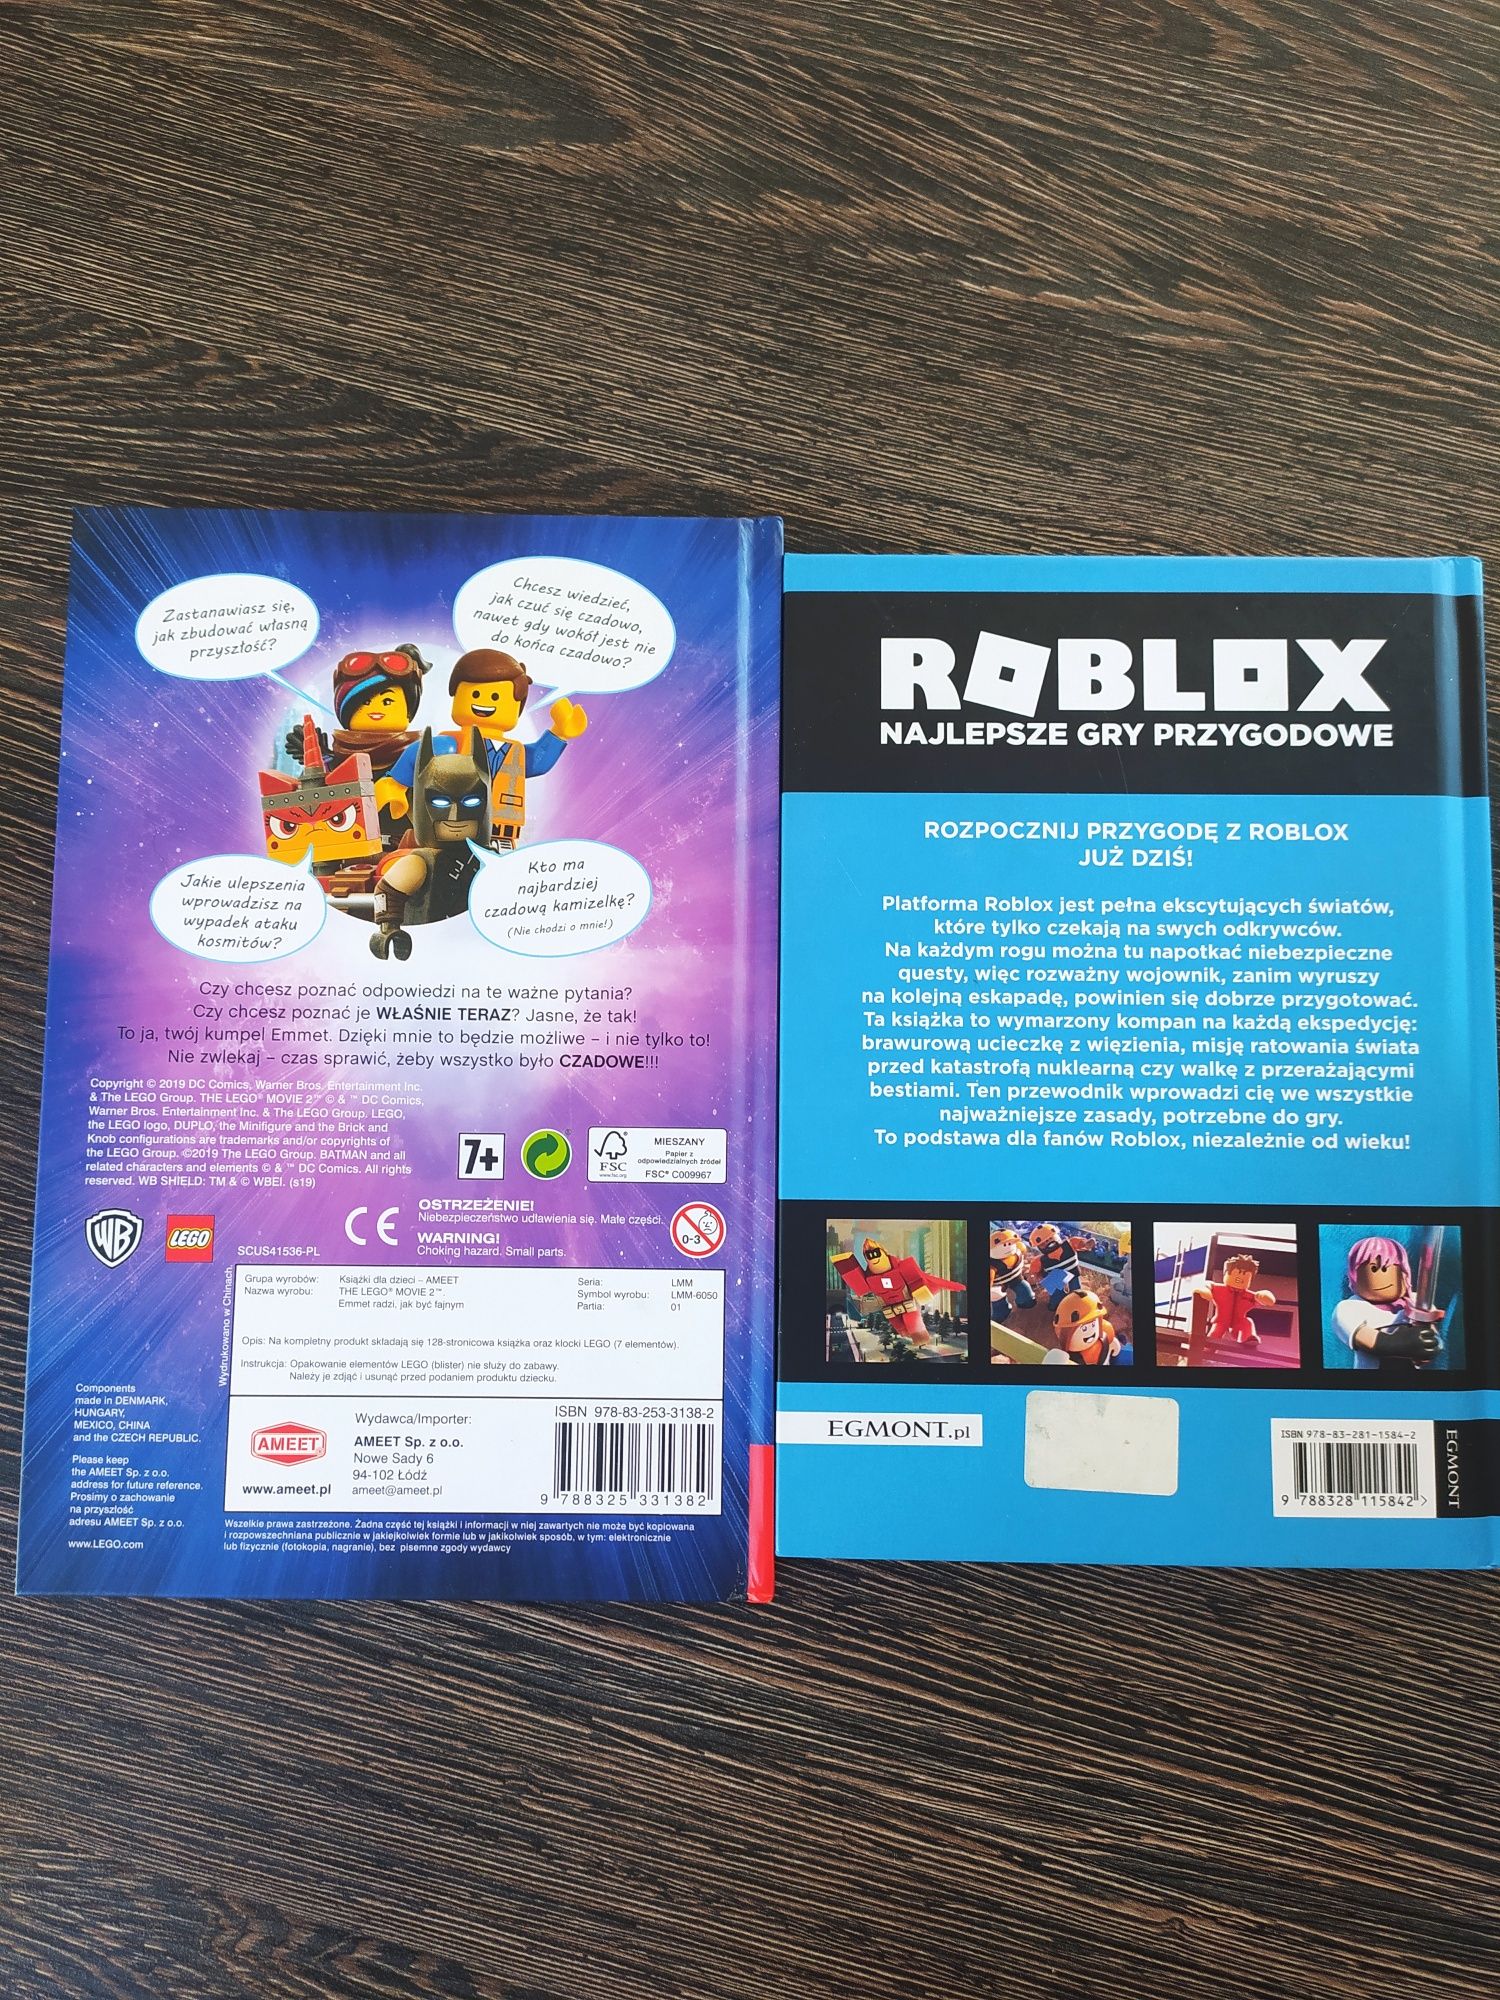 The Lego Movie Emmet radzi jak być fajnym, Roblox przewodnik po grach